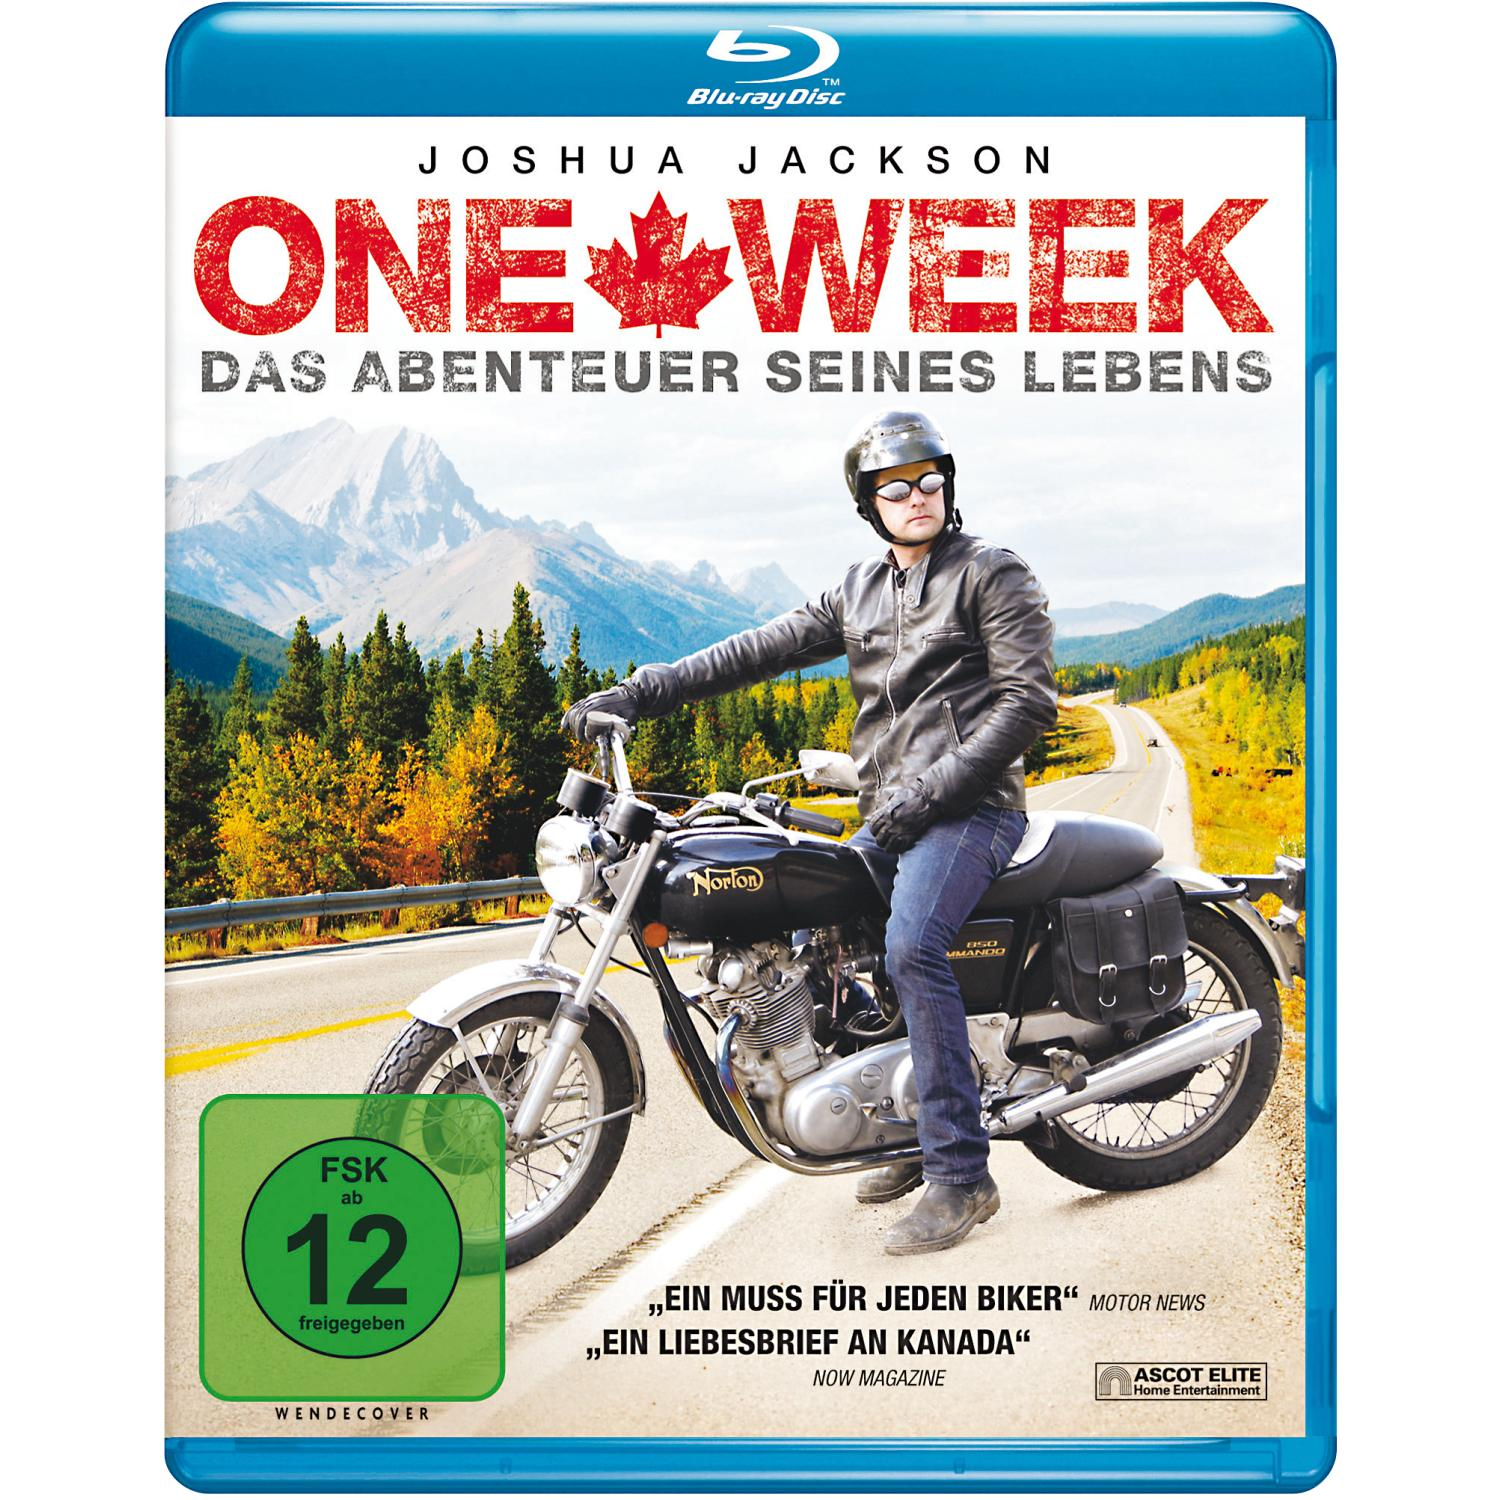 ONE WEEK - DAS Blu-ray LEBENS ABENTEUER SEINES